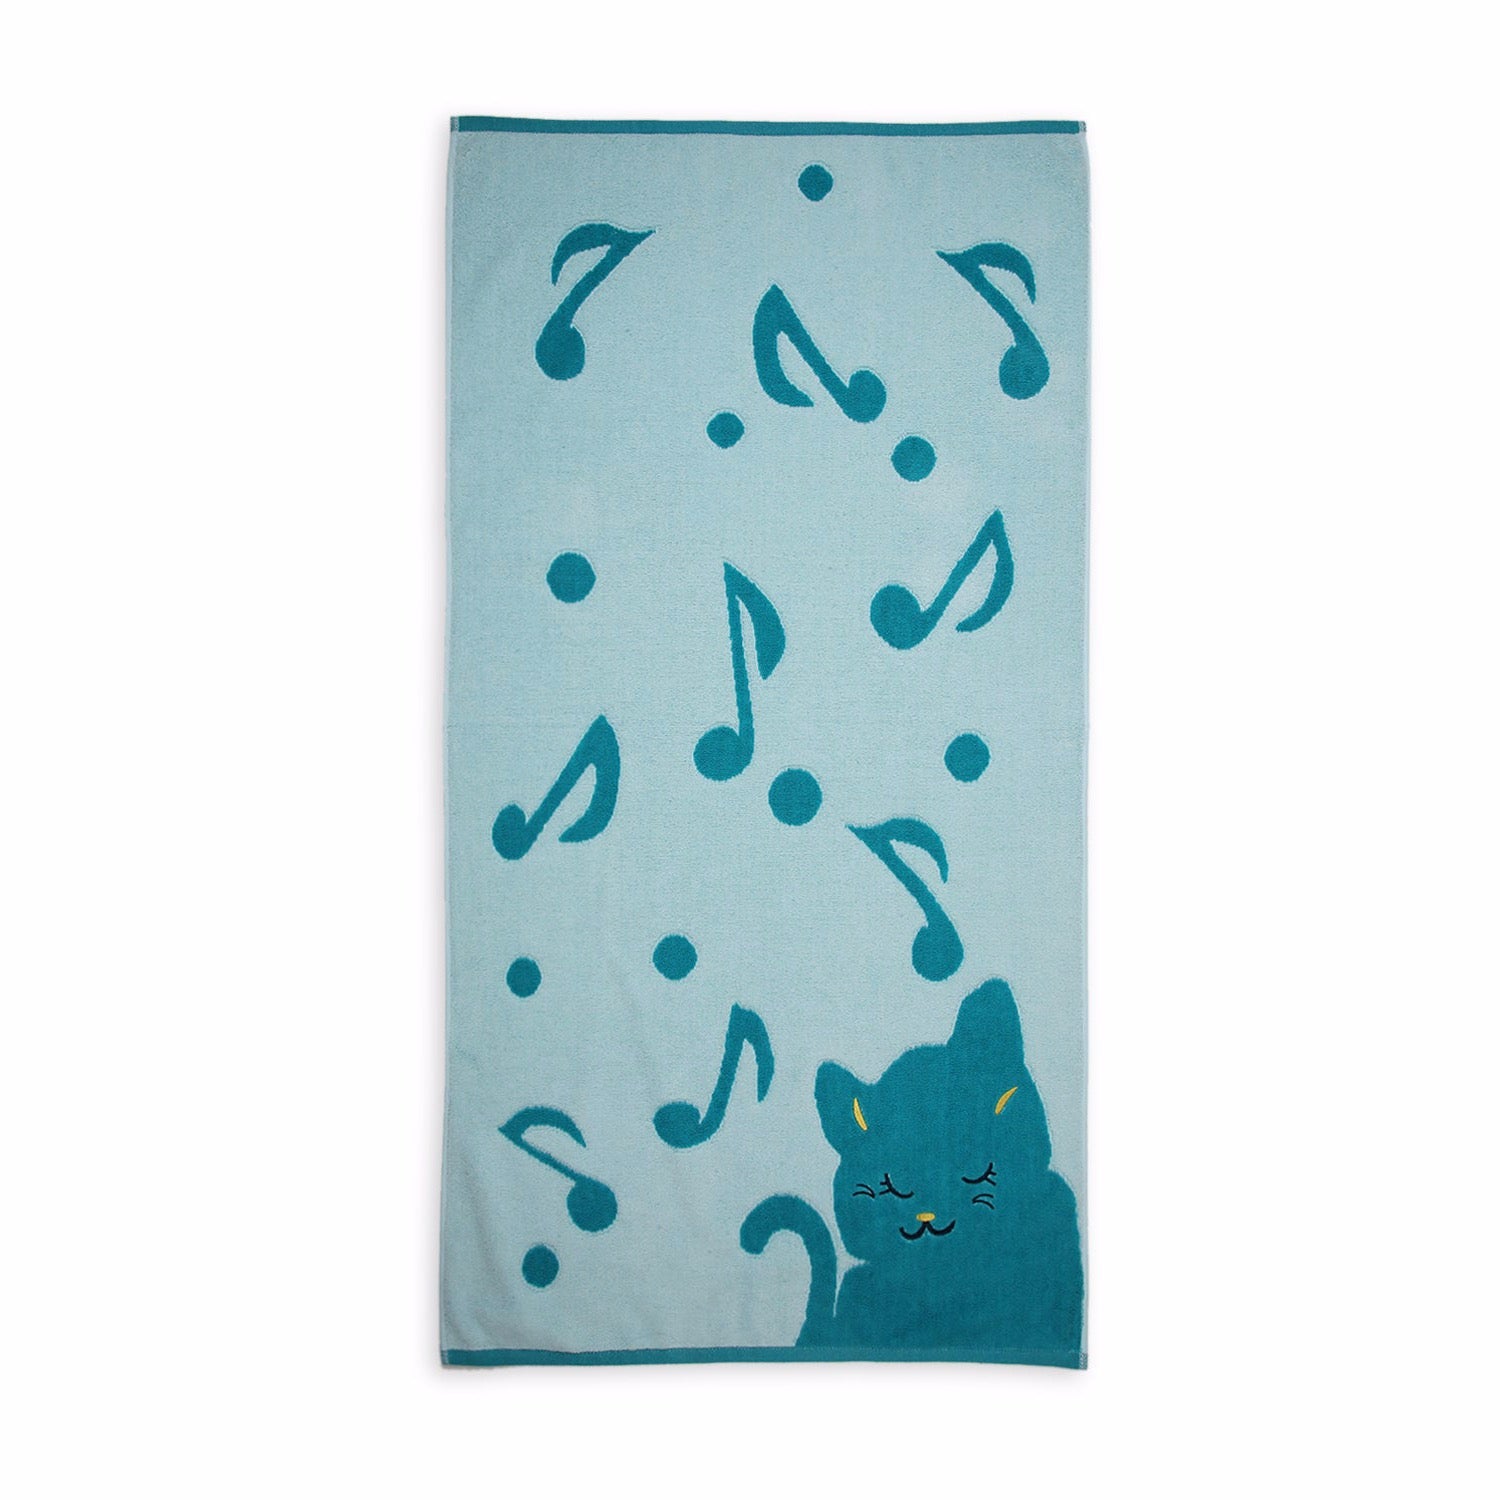 Singing Cat Towel